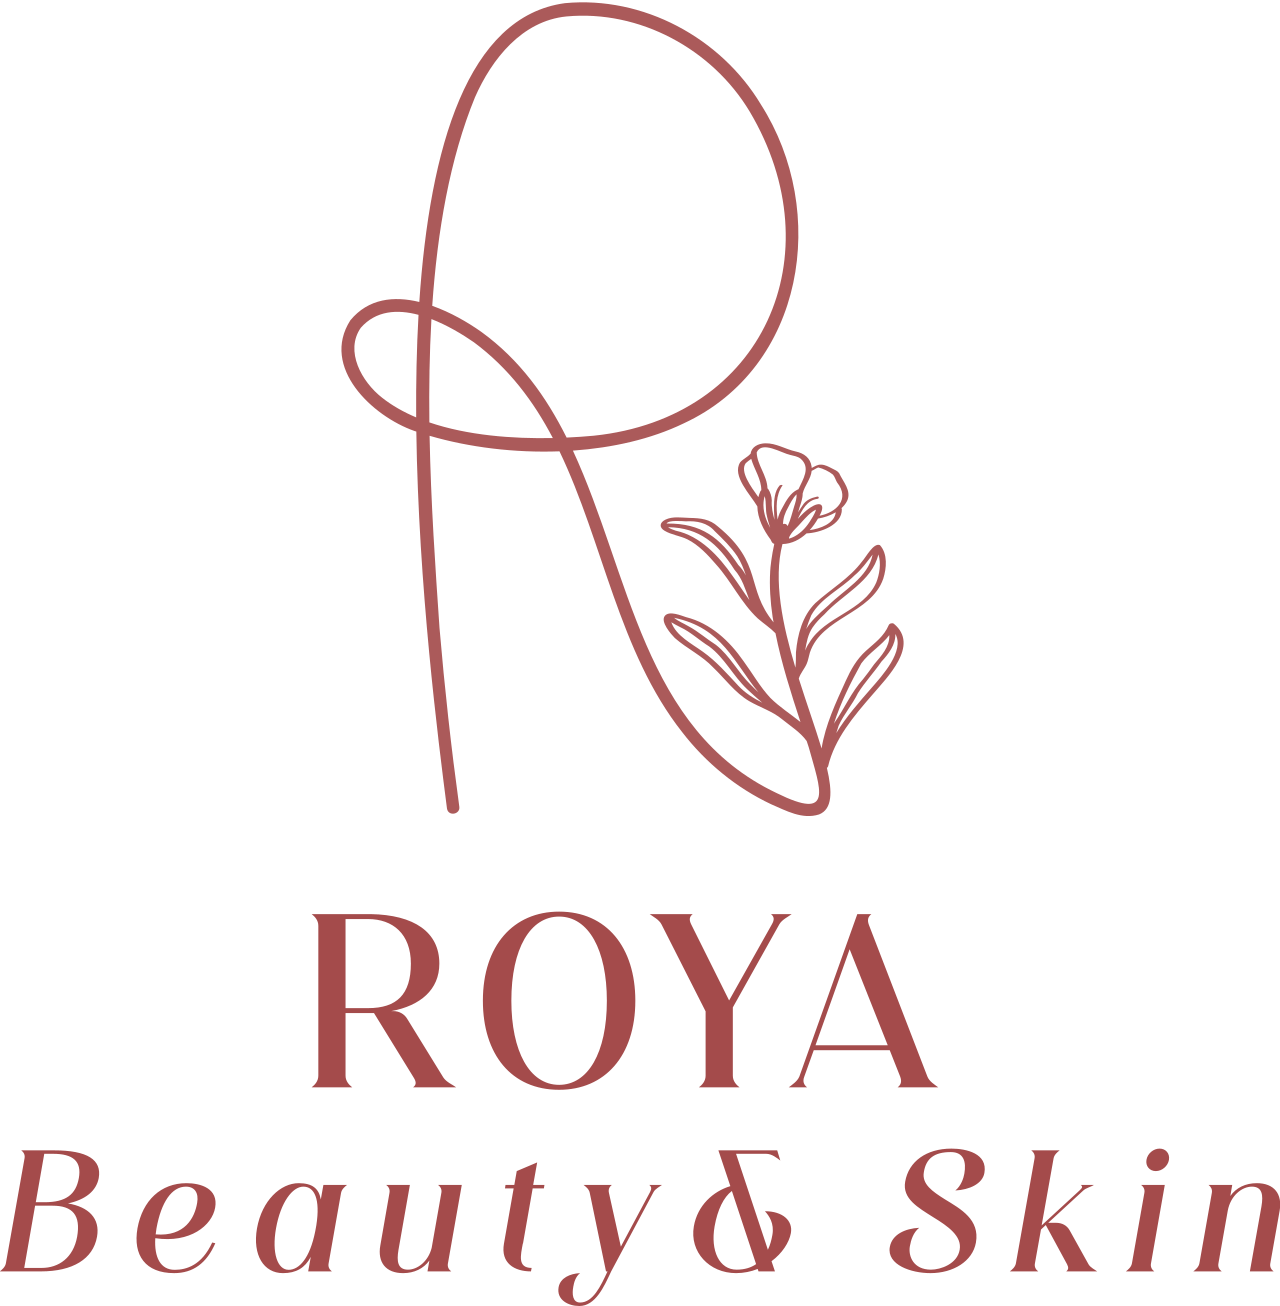 ROYA's logo